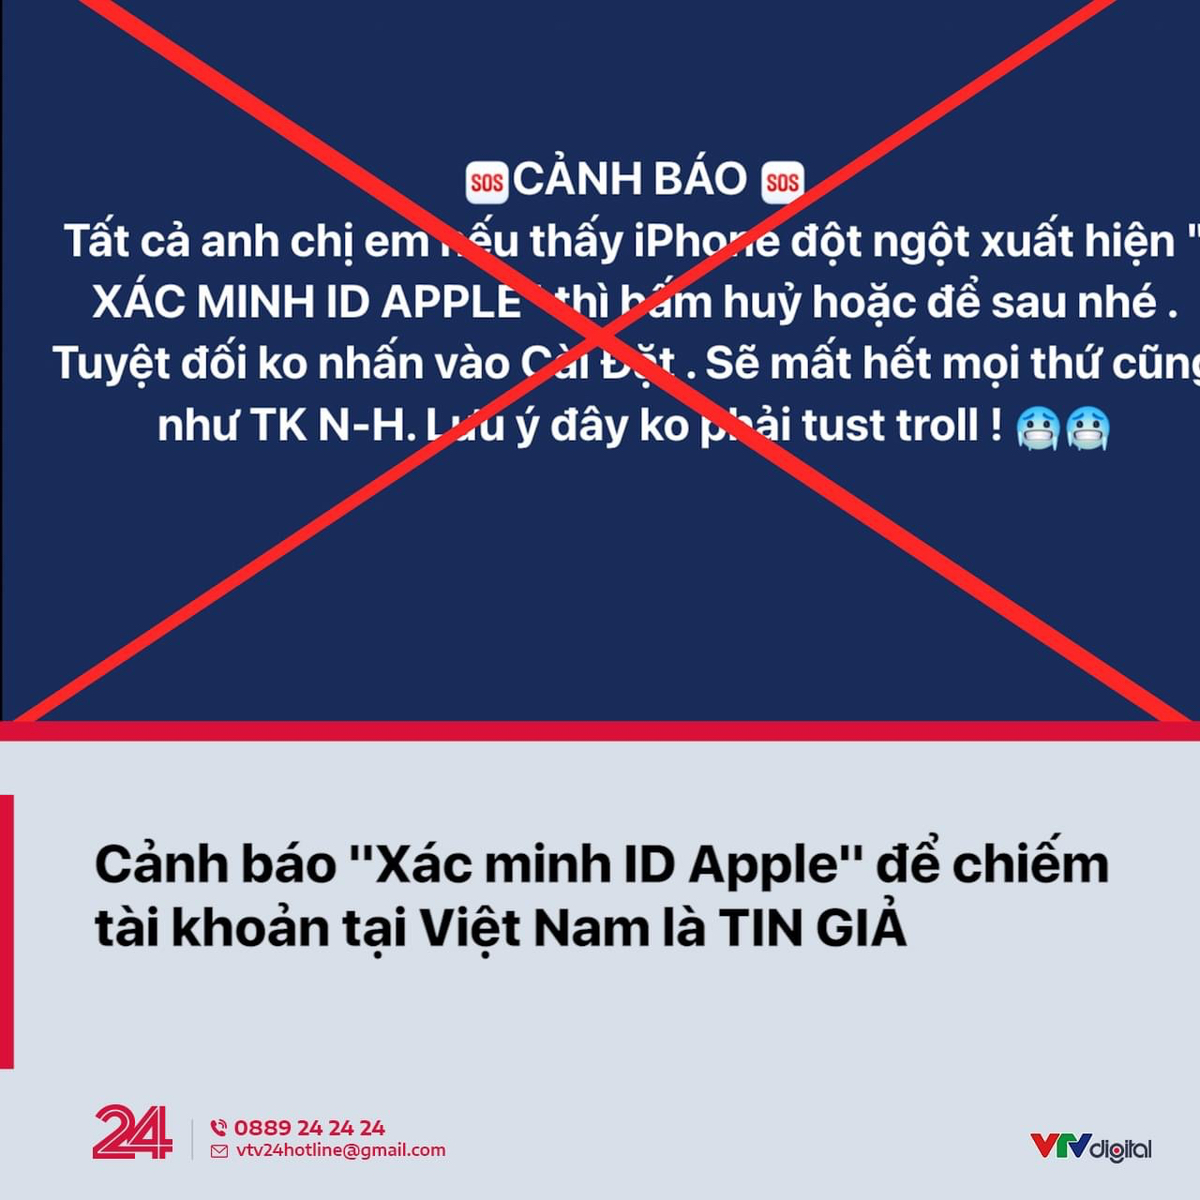 VTV24: Cảnh báo "Xác minh ID Apple" để chiếm tài khoản tại Việt Nam là TIN GIẢ